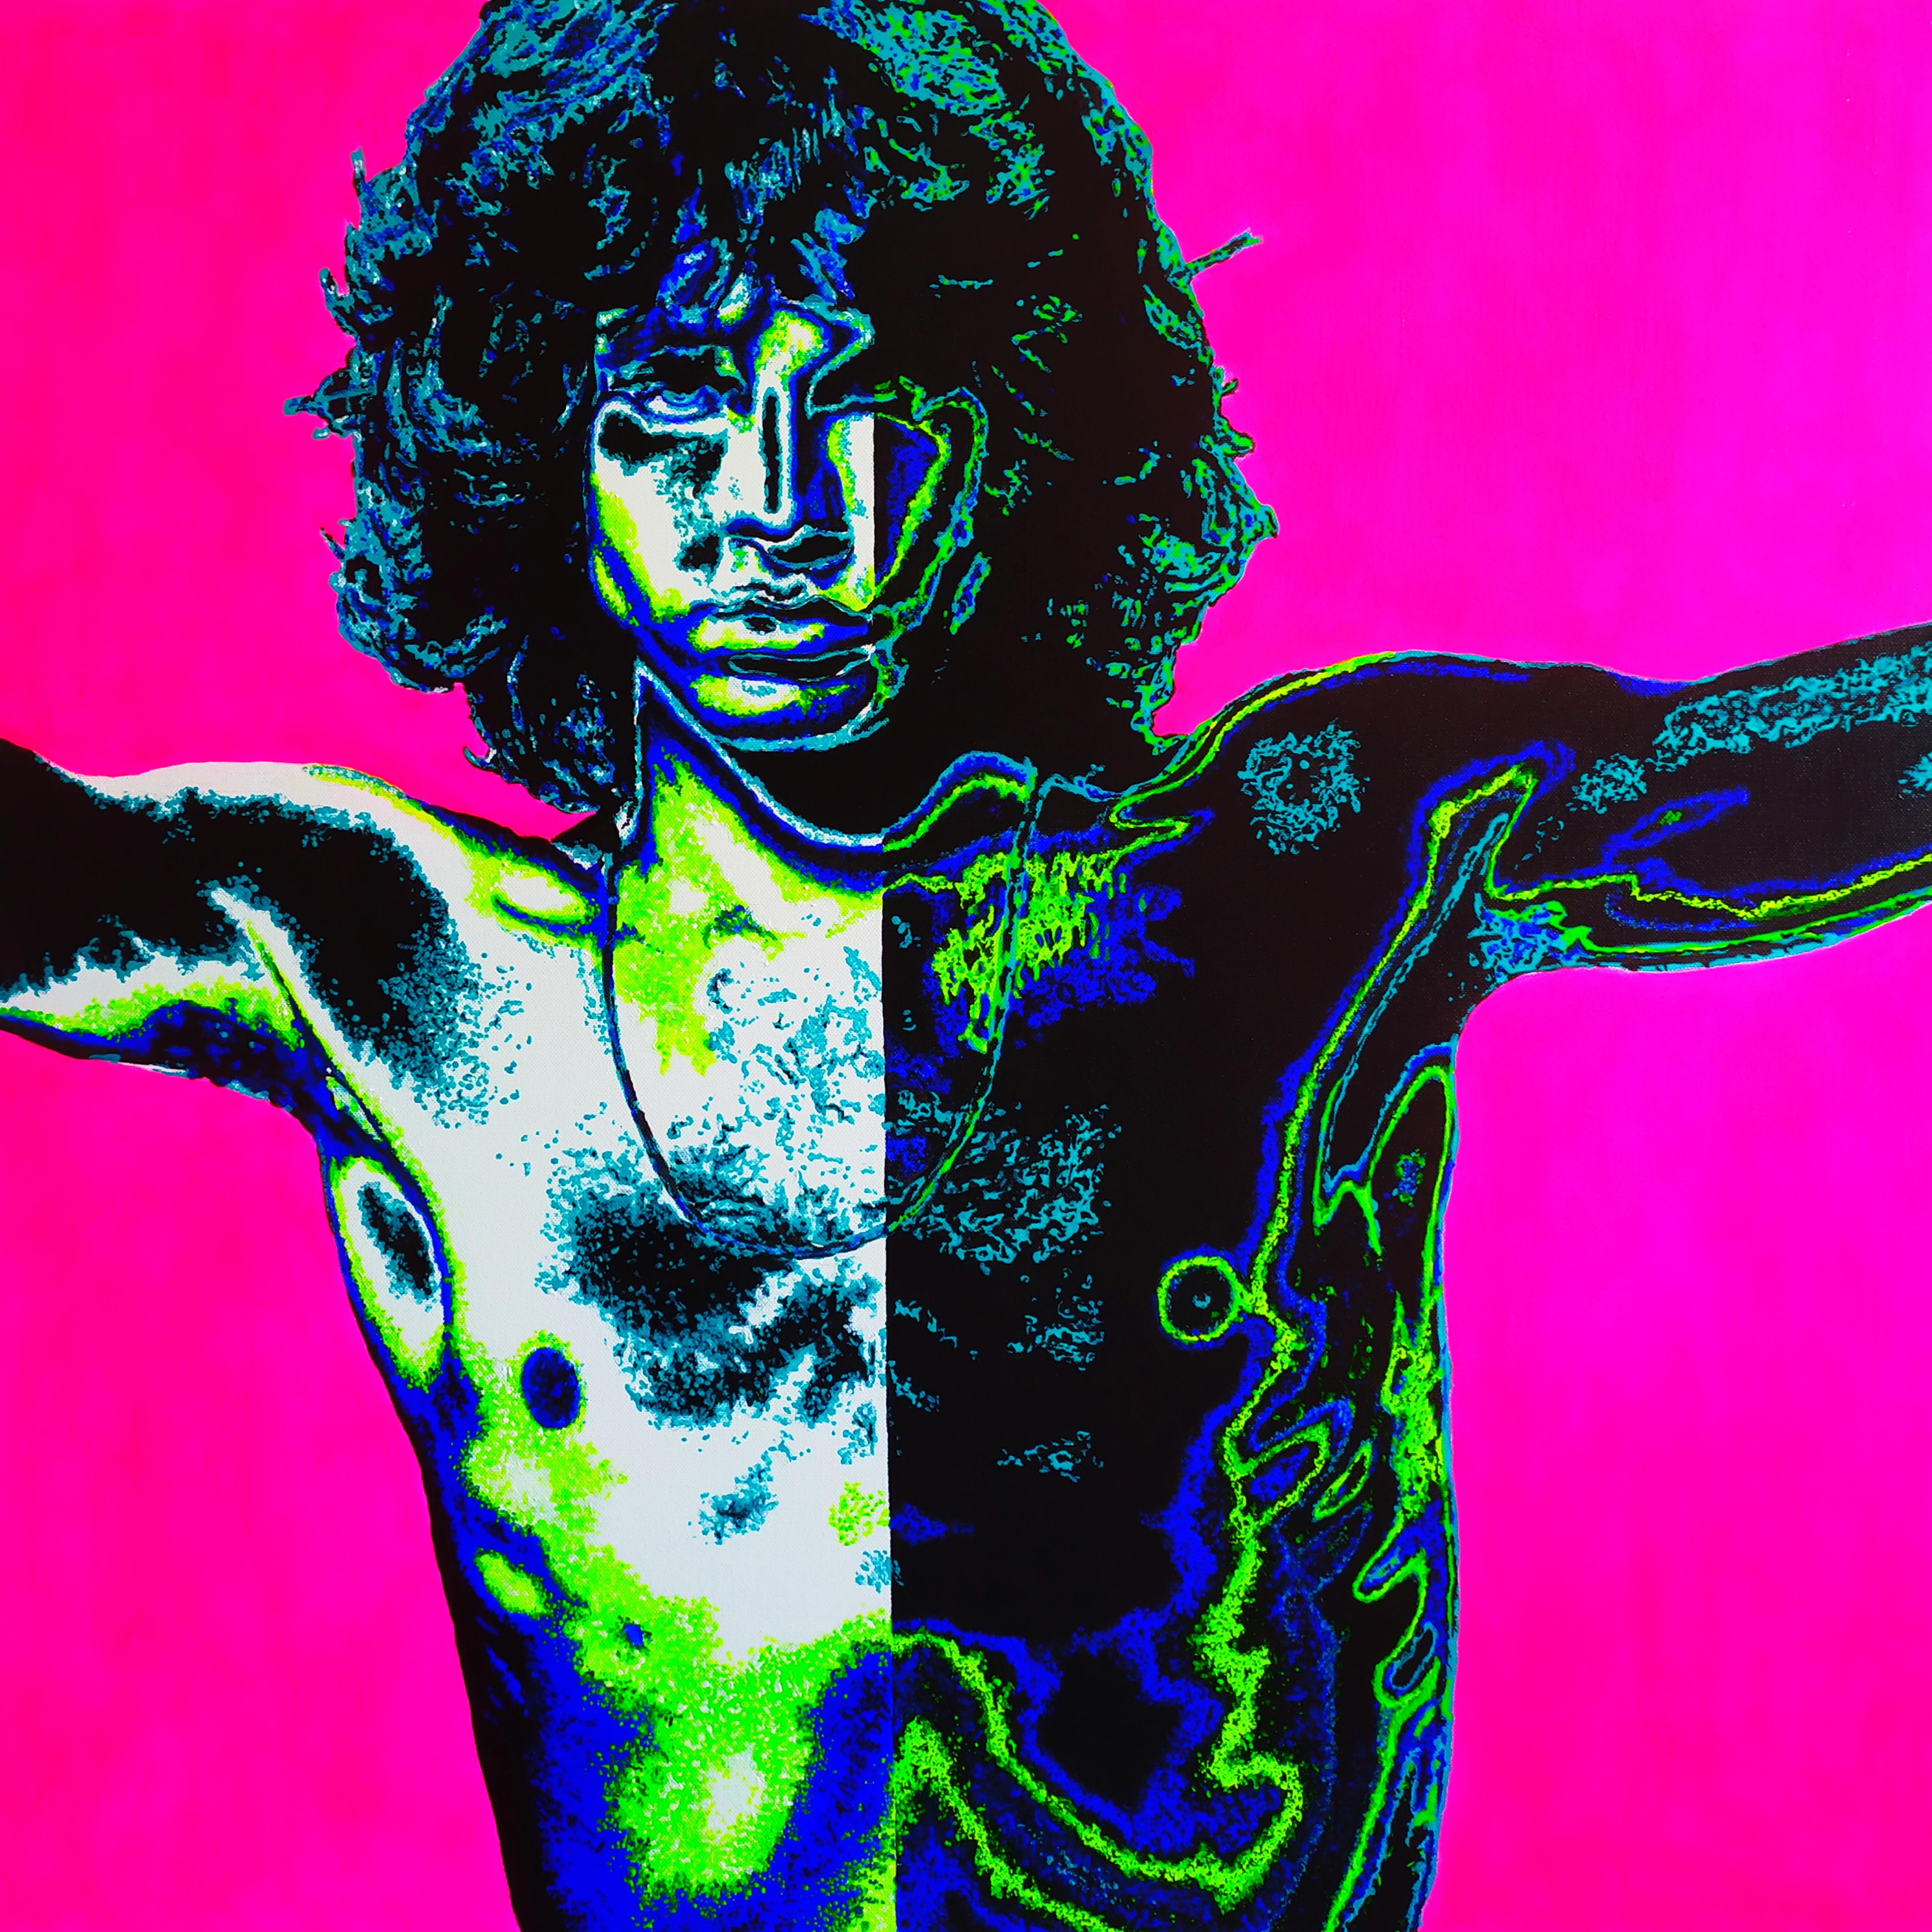 Figurative Painting Alexandar Inchovski - Jim Morrison, Le Shaman rose - Peinture de portrait rose, noir, bleu, vert et blanc